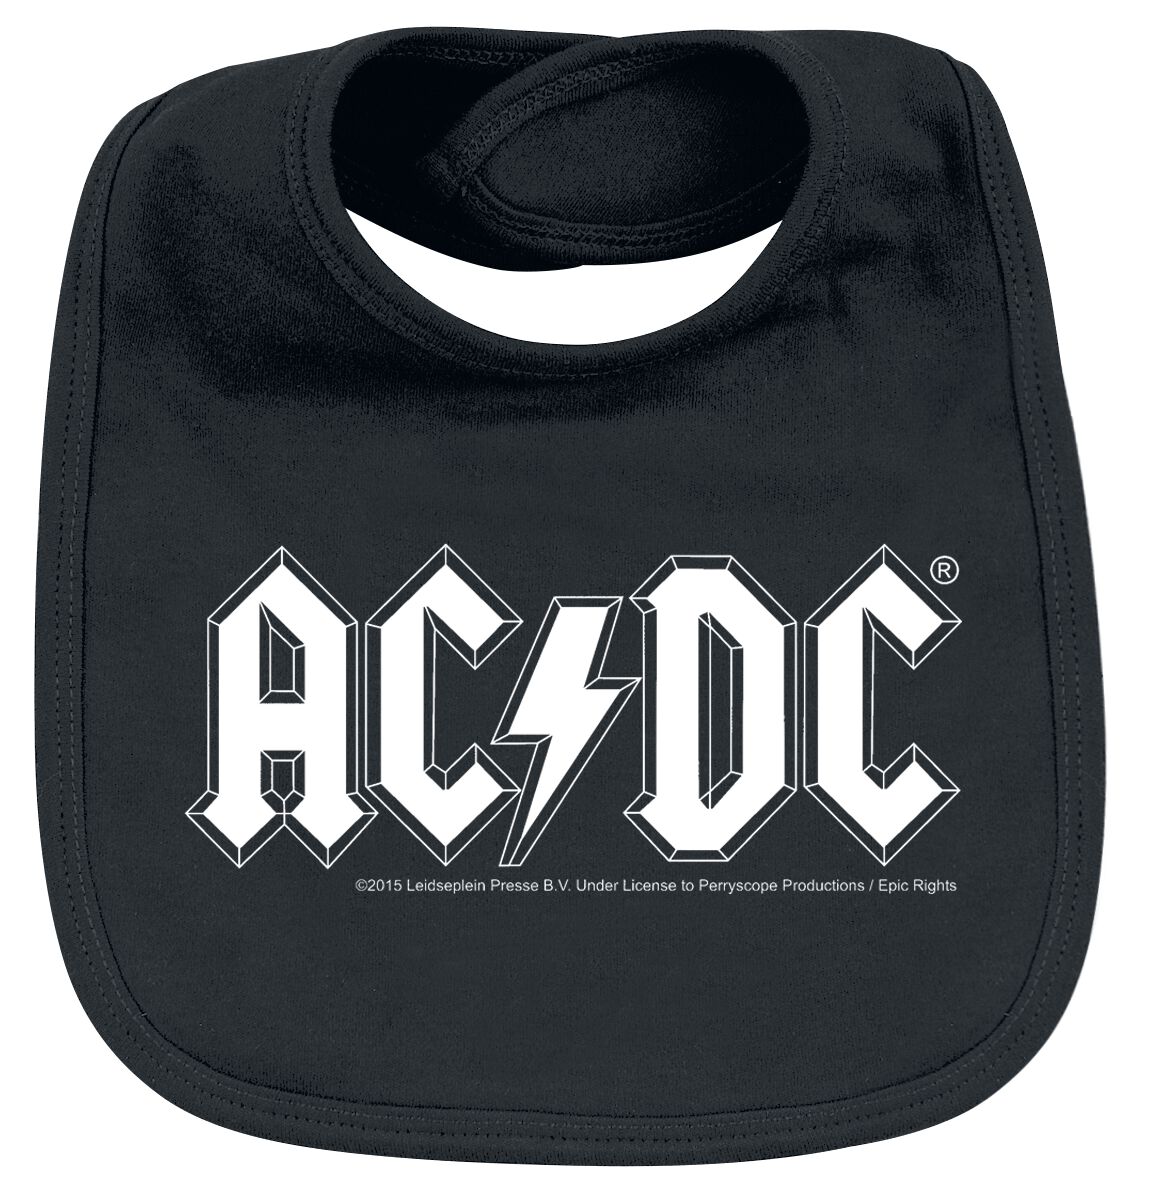 AC/DC Lätzchen - Metal-Kids - Logo - für Mädchen & Jungen - schwarz  - Lizenziertes Merchandise!